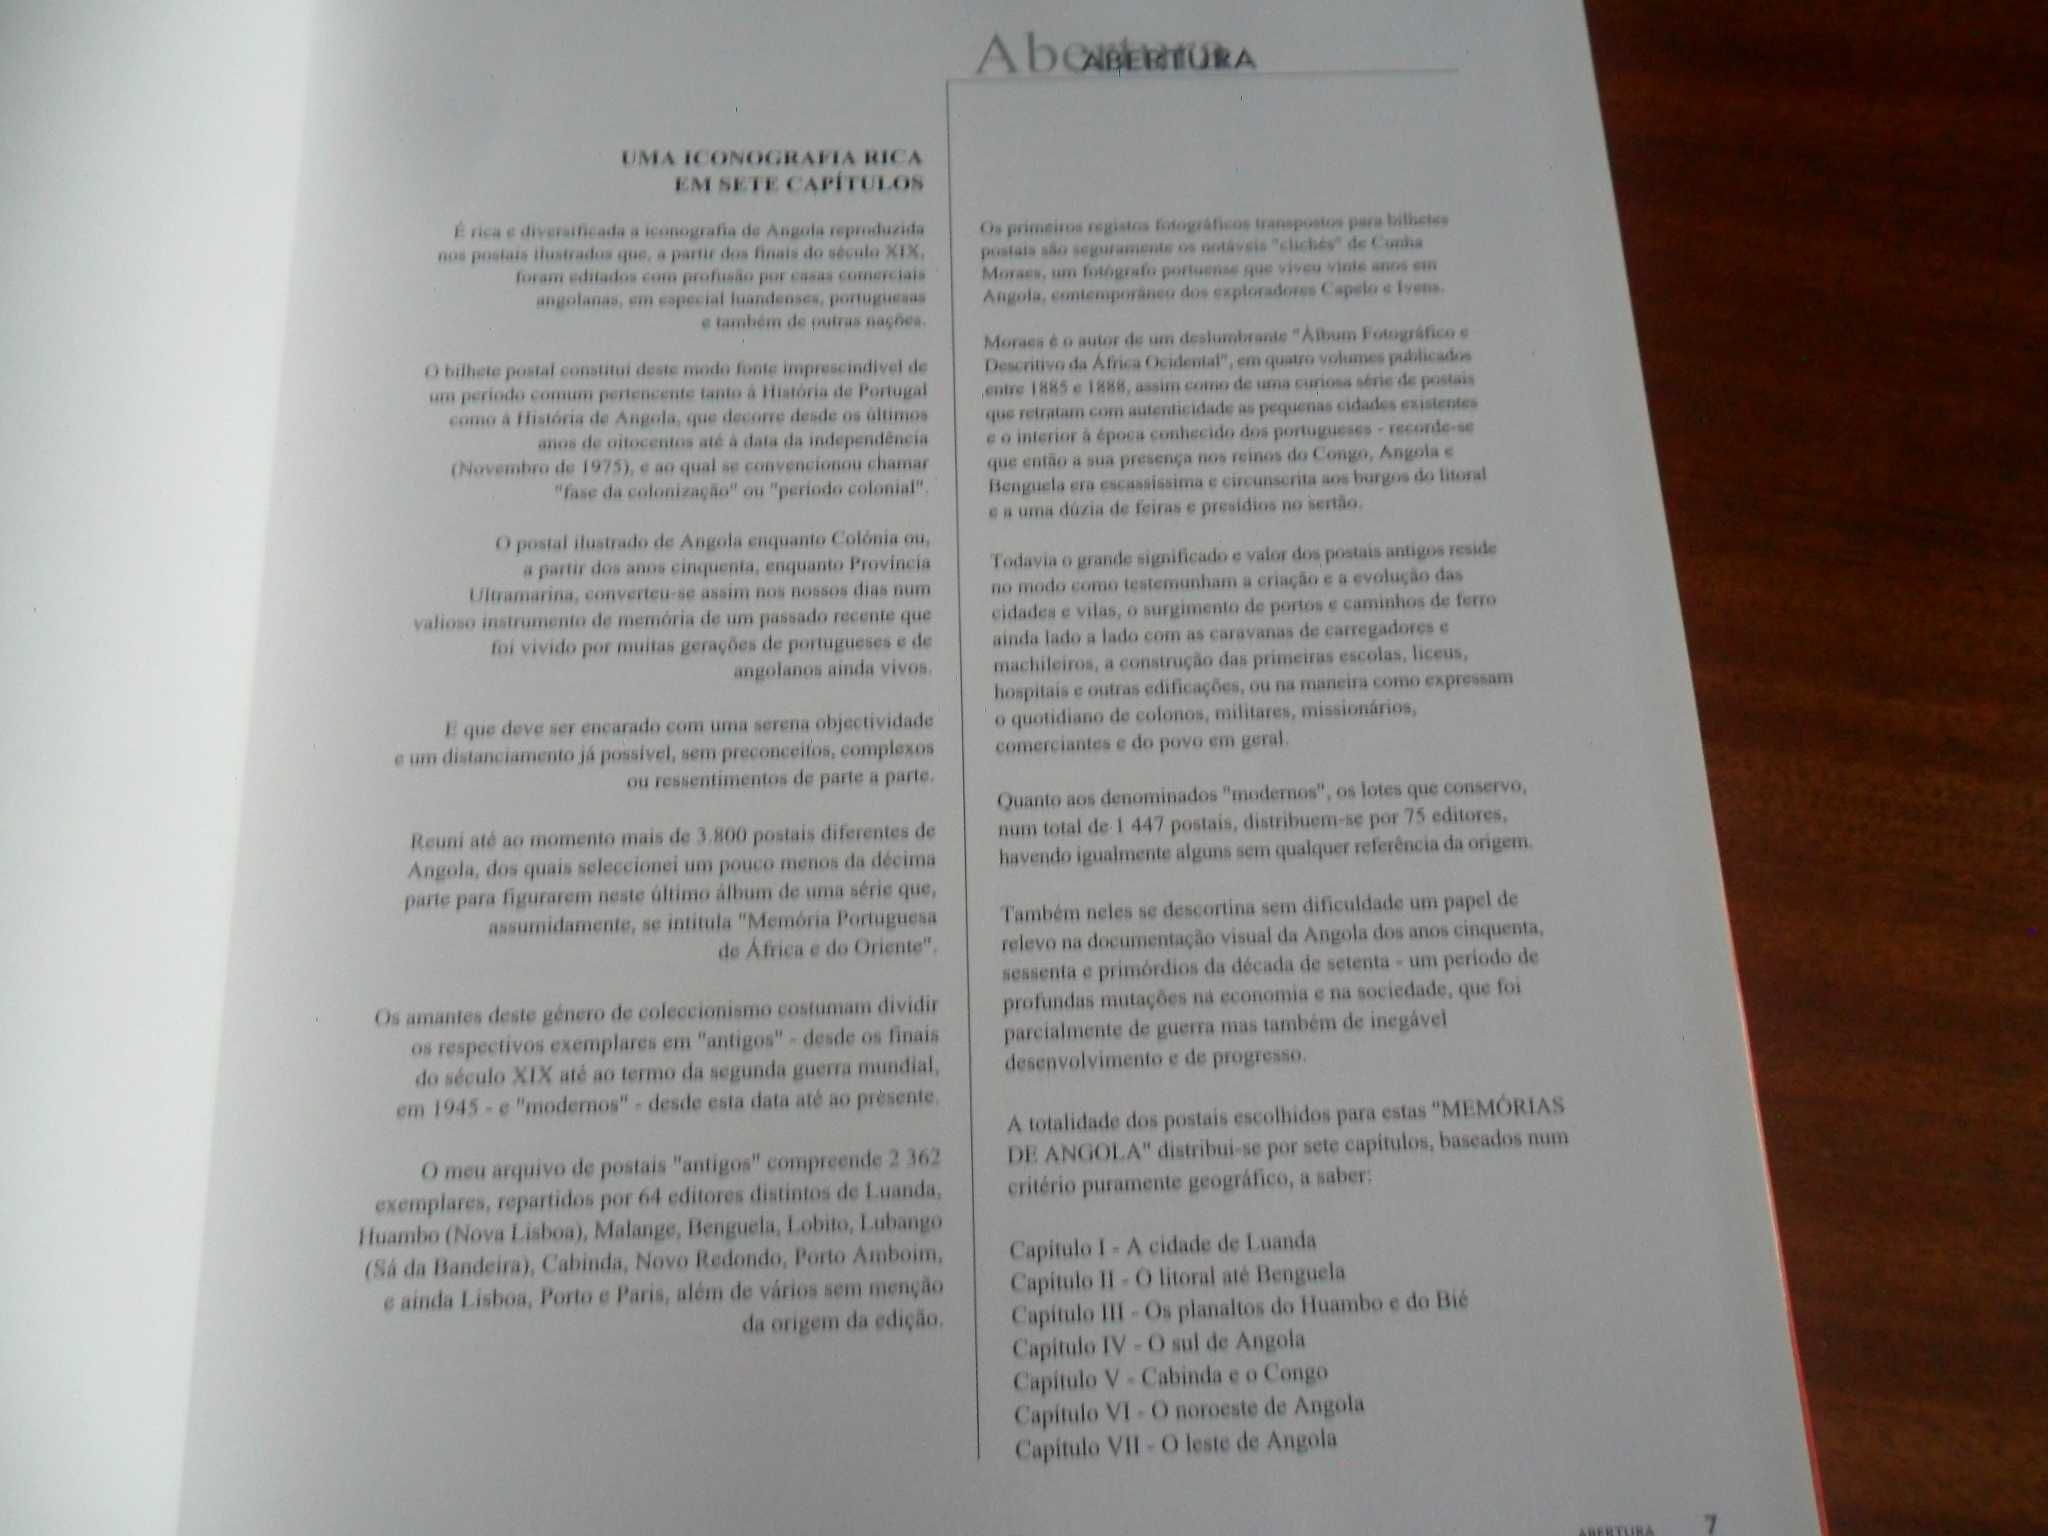 "Memórias de Angola" de João Loureiro - 1ª Edição de 2000